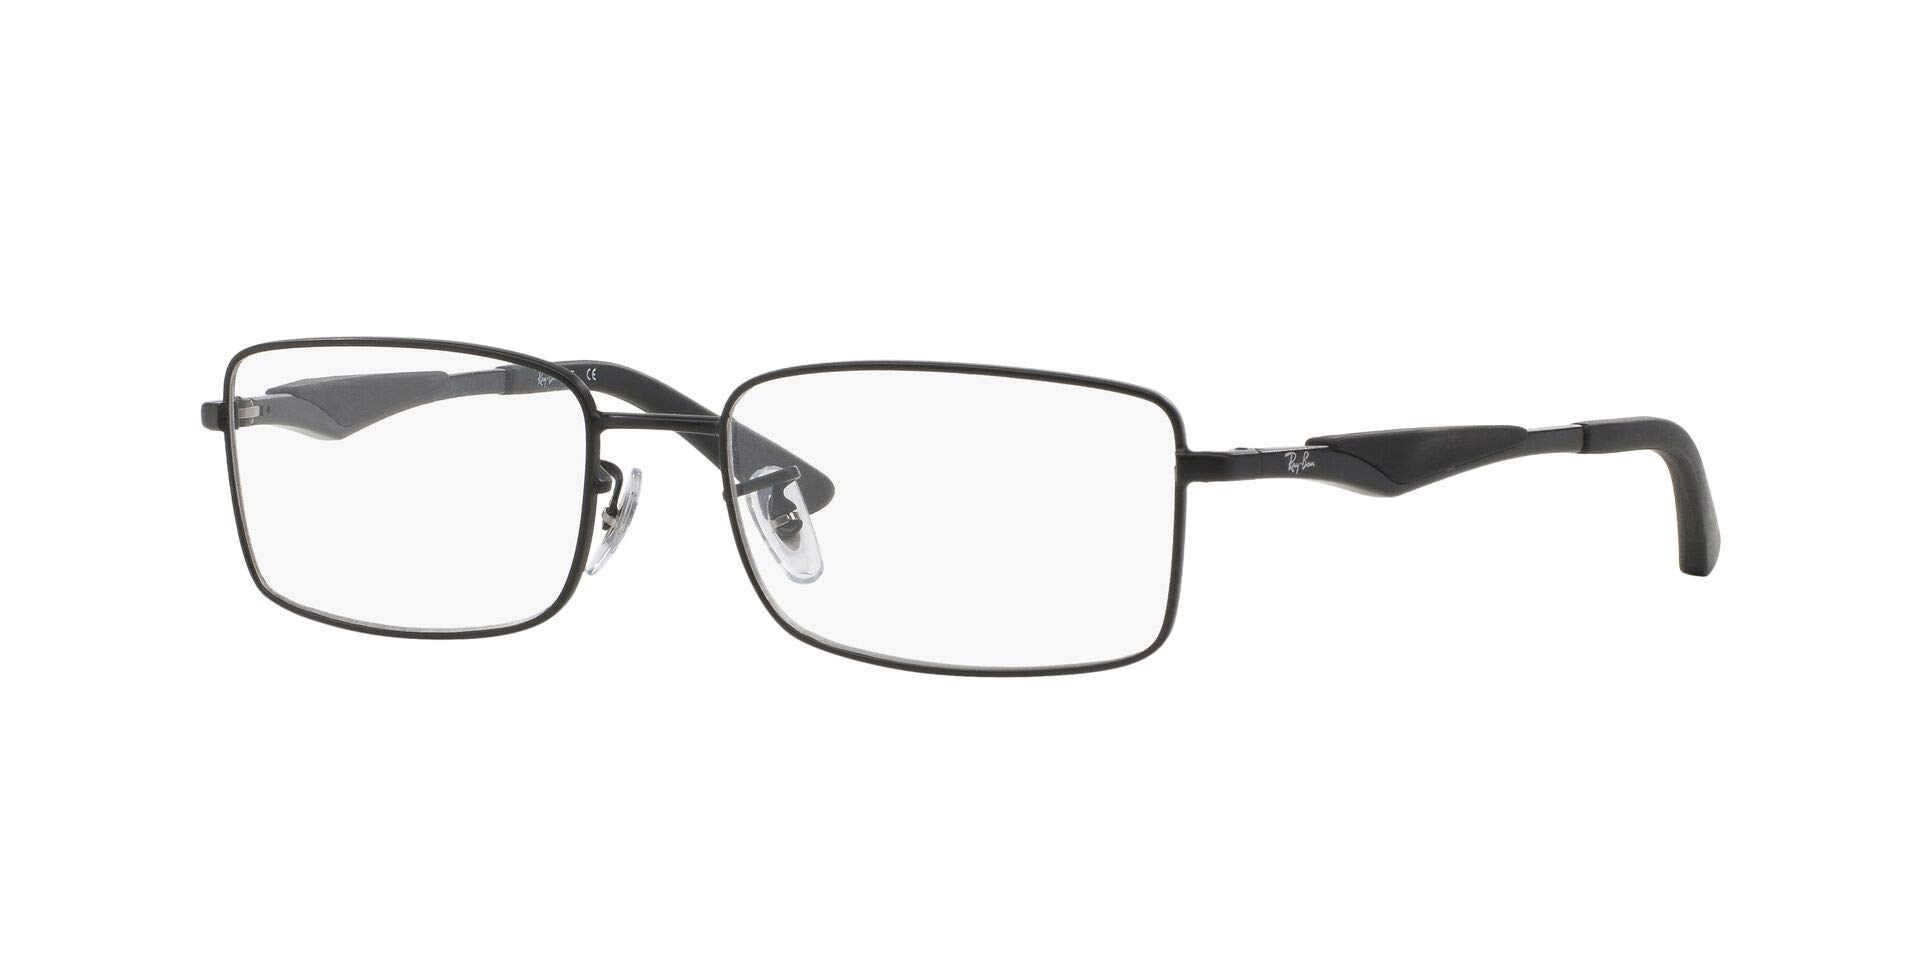 Ray-Ban RB6284 2503 Eyeglasses Black w/ Clear Demo Lens 55mm